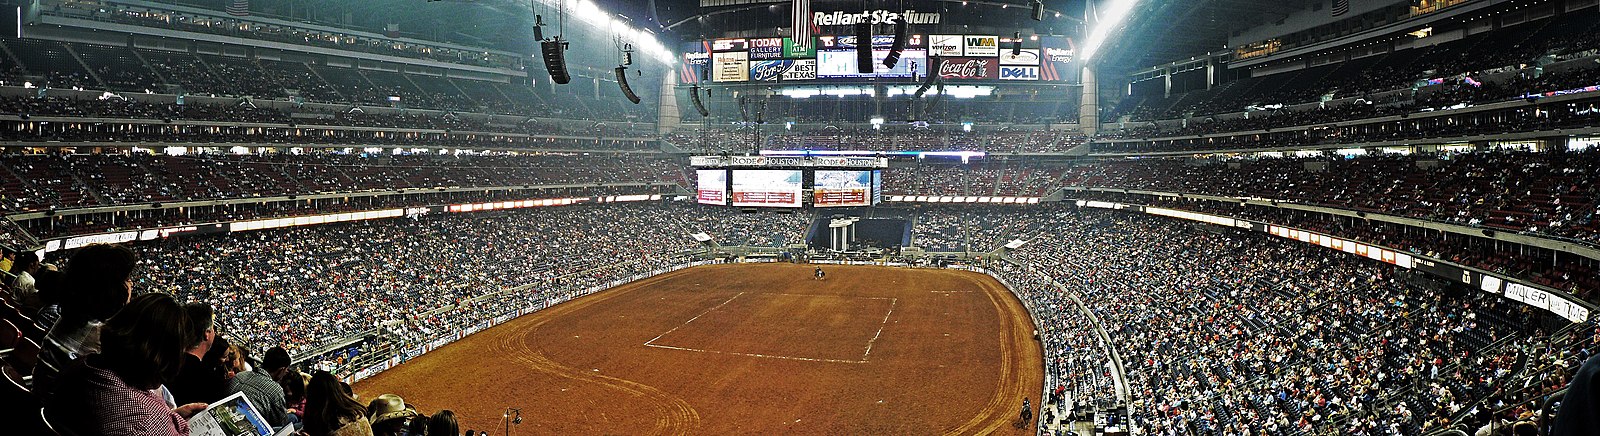 Doroczny Houston Livestock Show and Rodeo, odbywający się na NRG Stadium